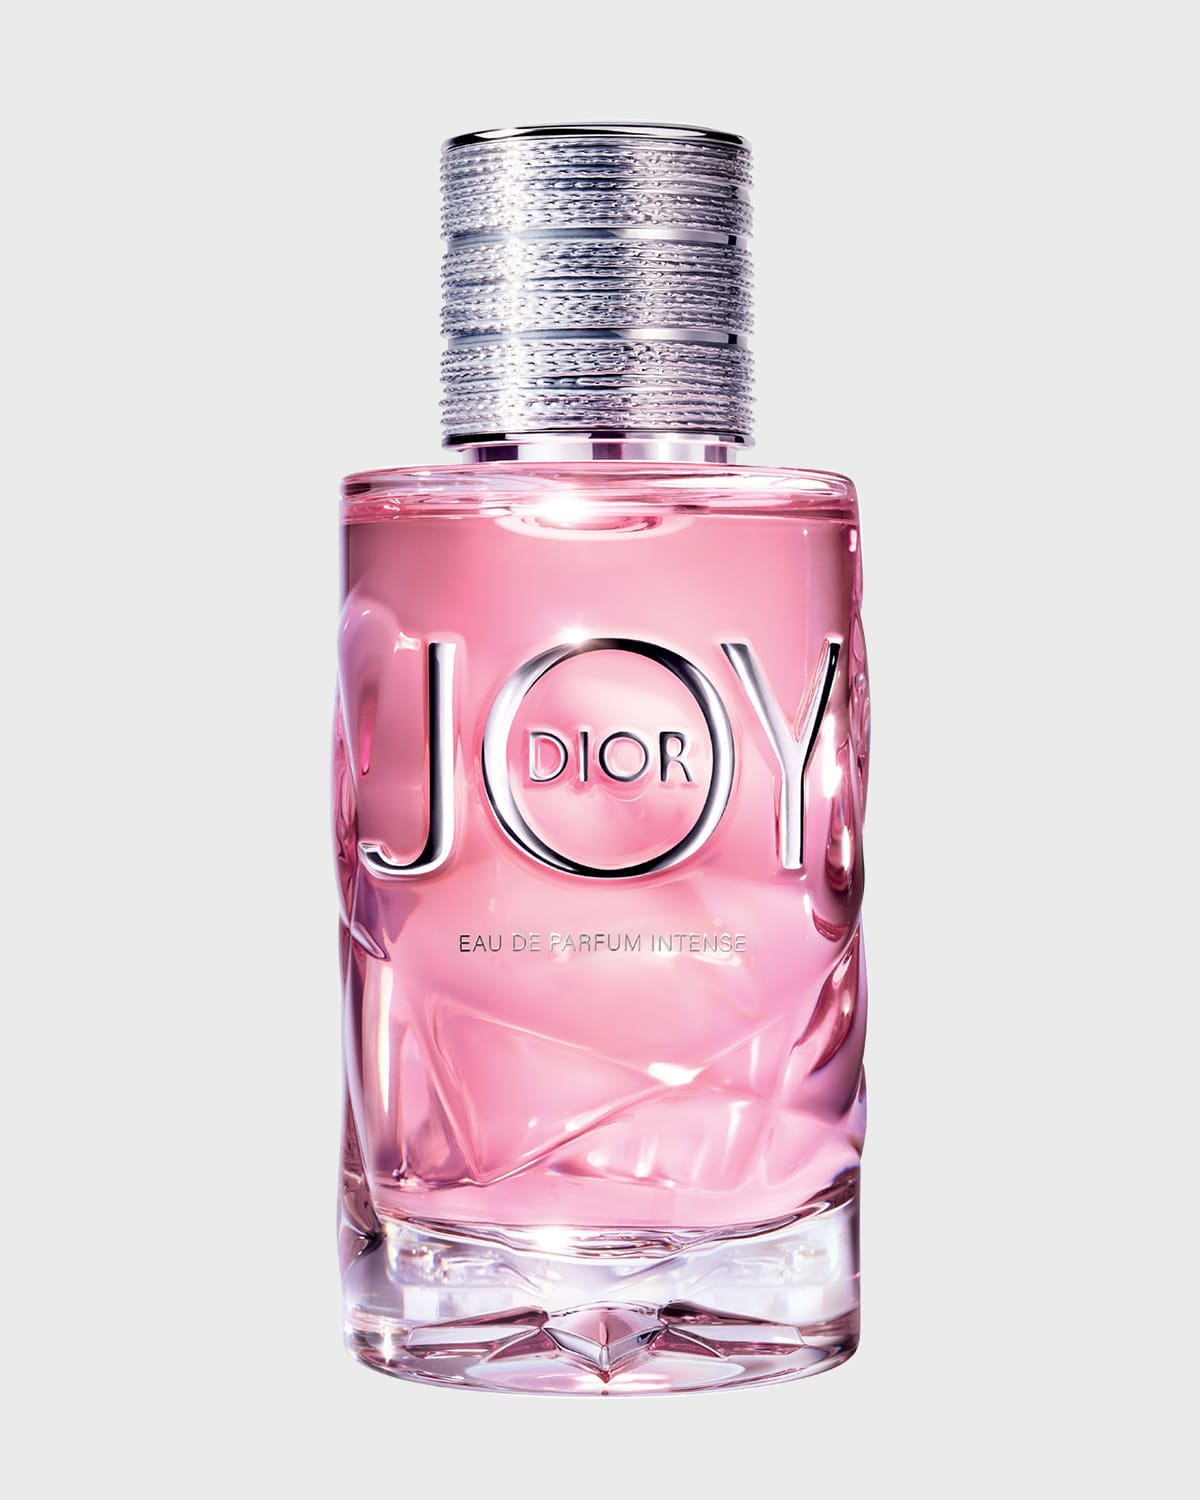 JOY by Dior Eau de Parfum Intense, 1.7 oz.